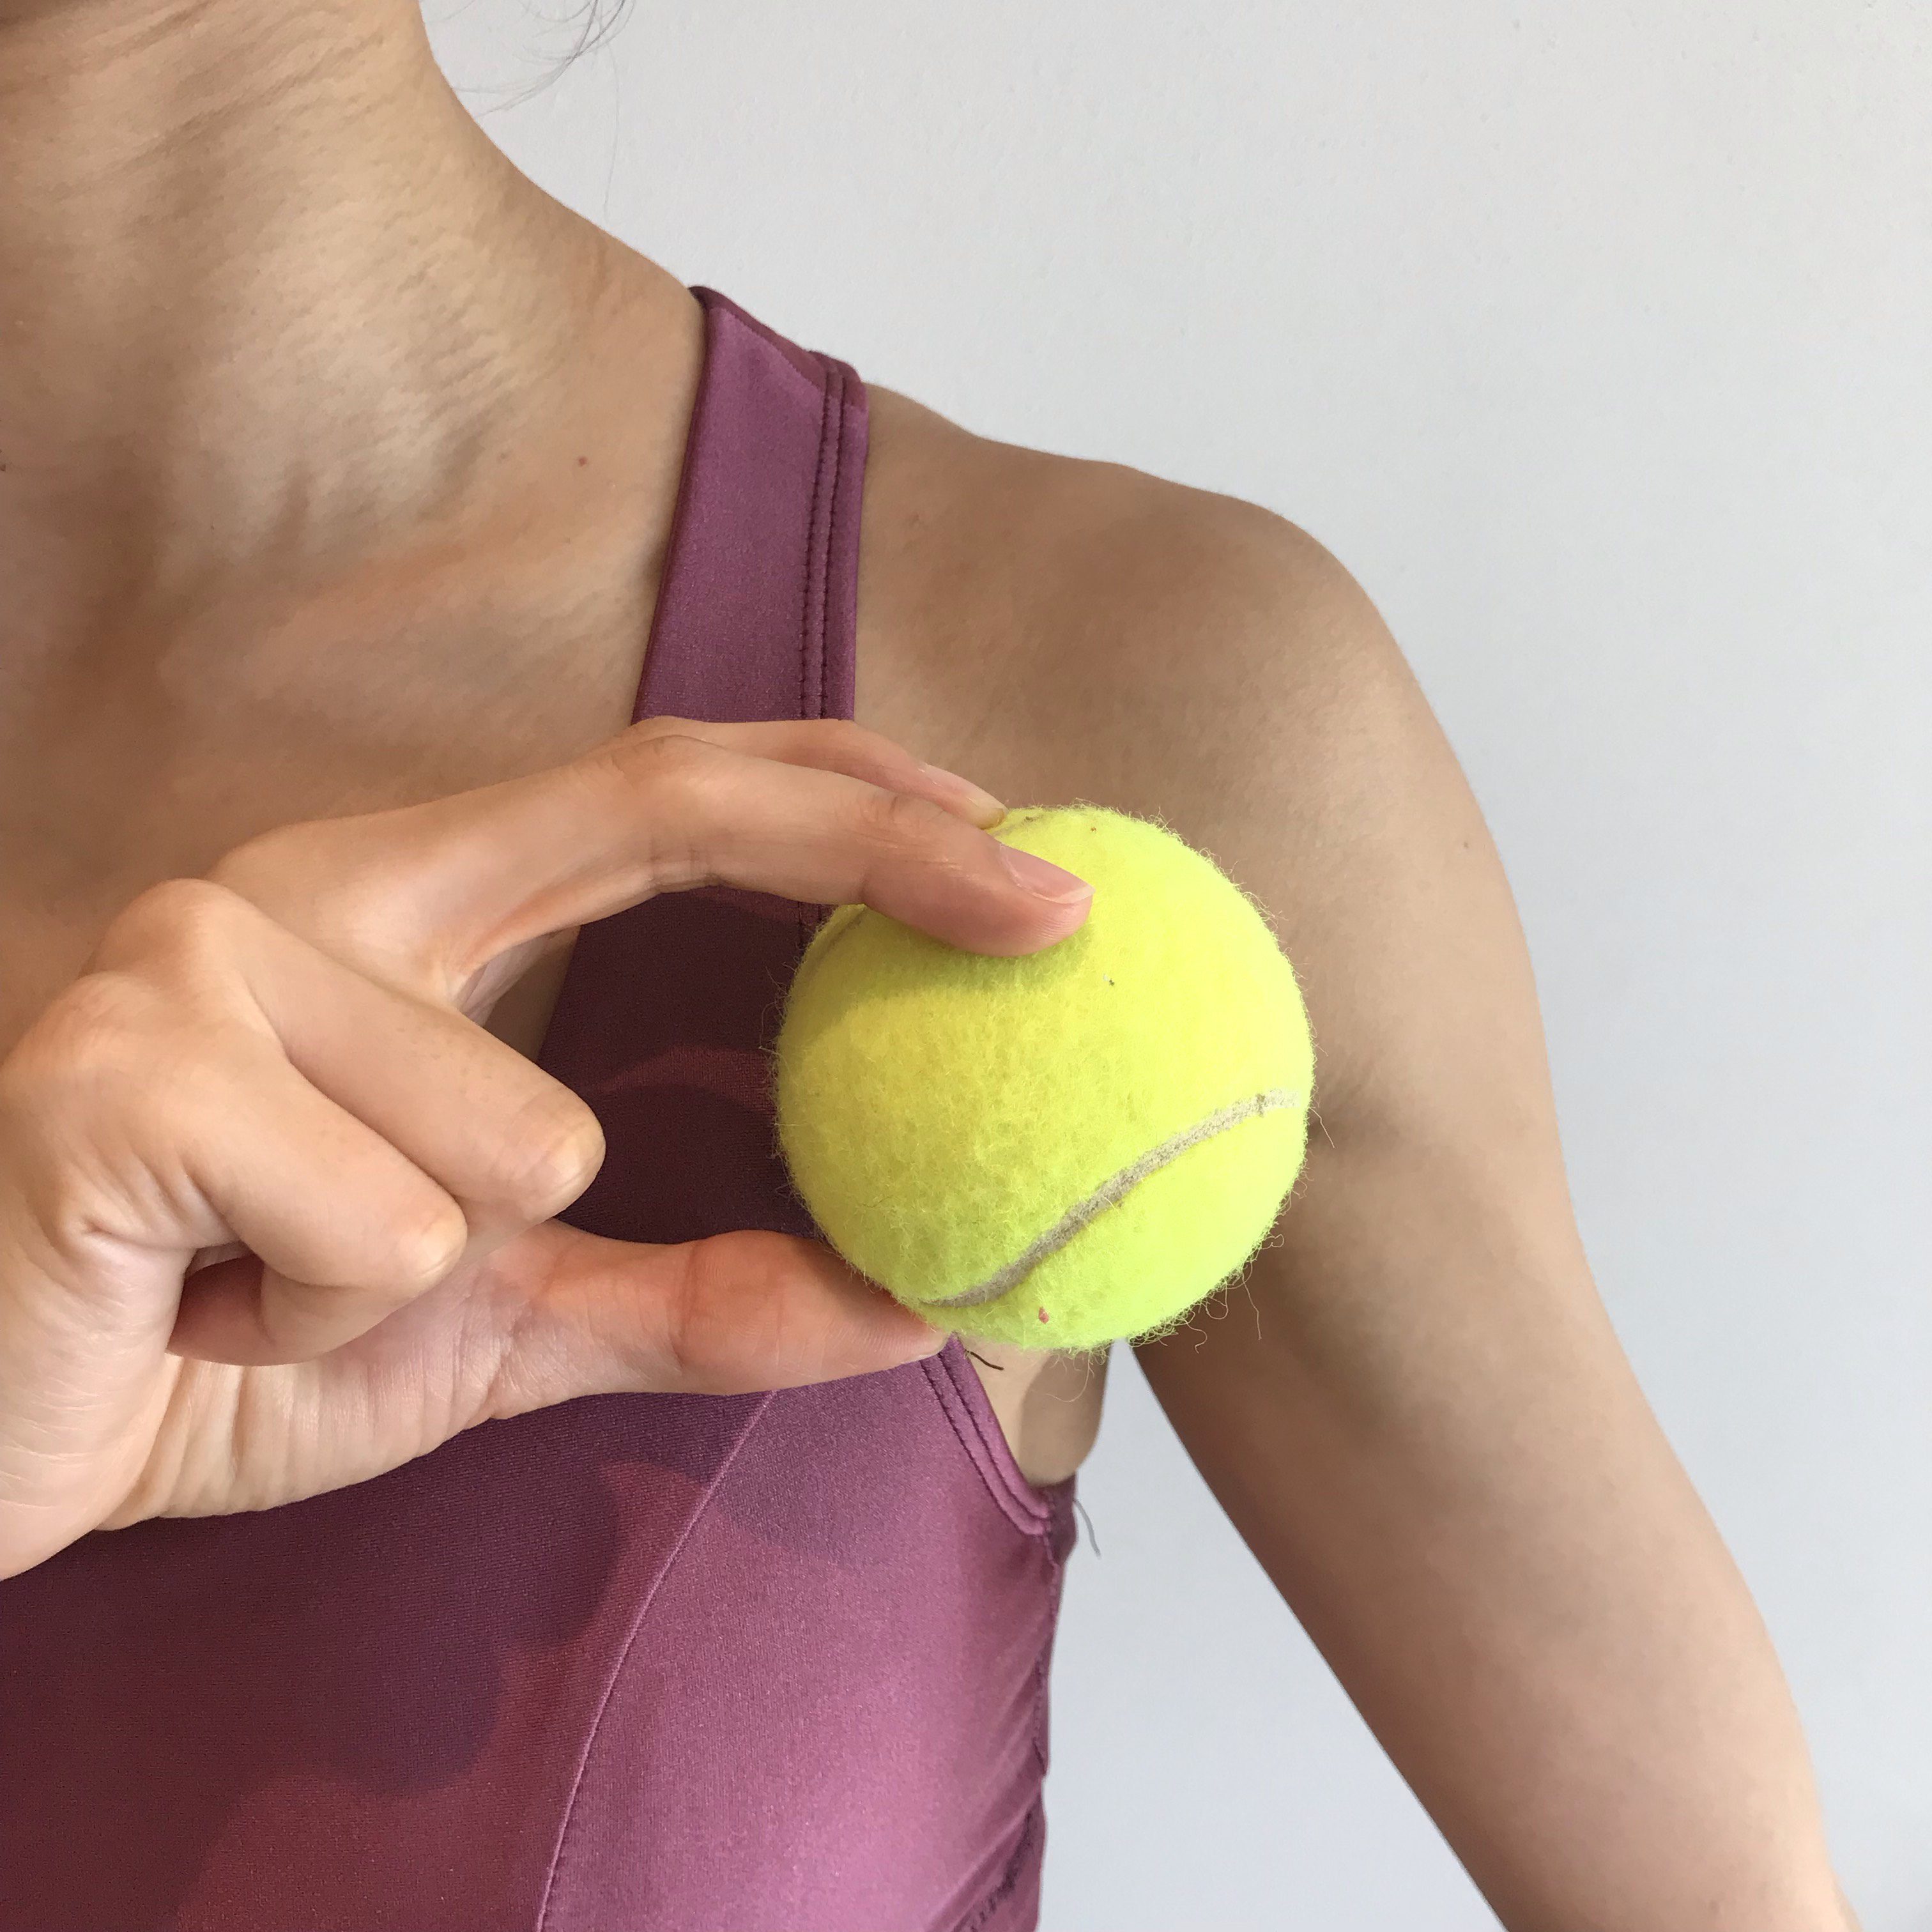 小胸筋のストレッチで巻き肩 肩こり 痛みが改善 壁 テニスボールを使ったメニューなど Slope スロープ